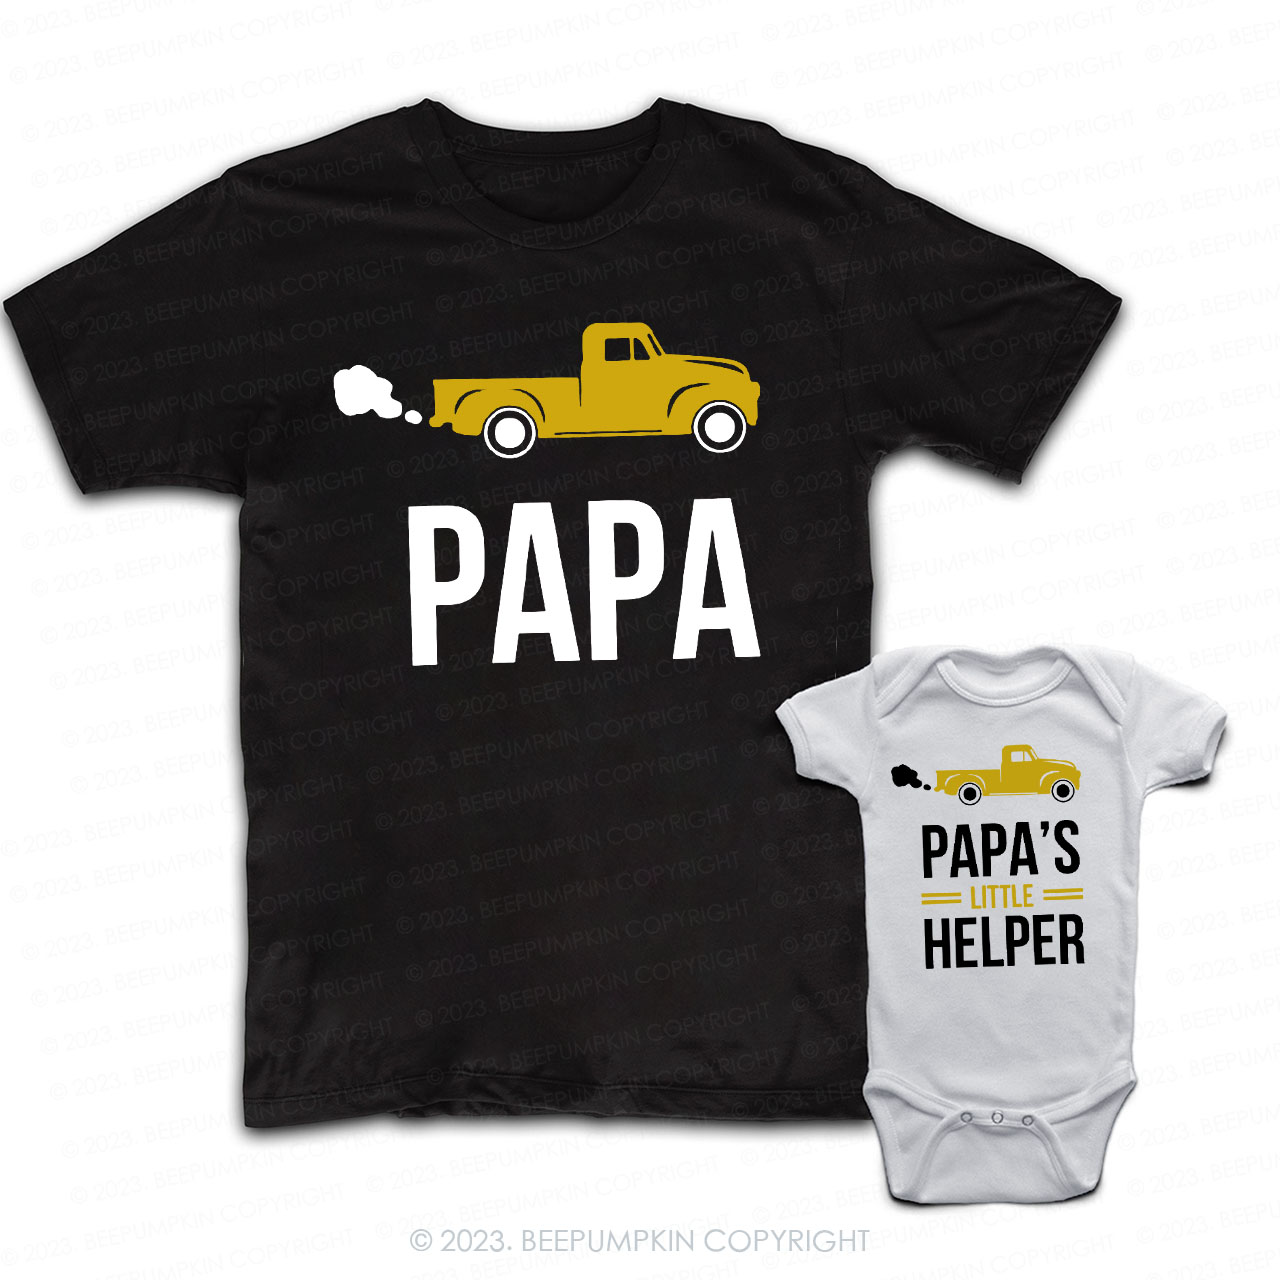  Little Helper Dad & Me Matching T-Shirts 